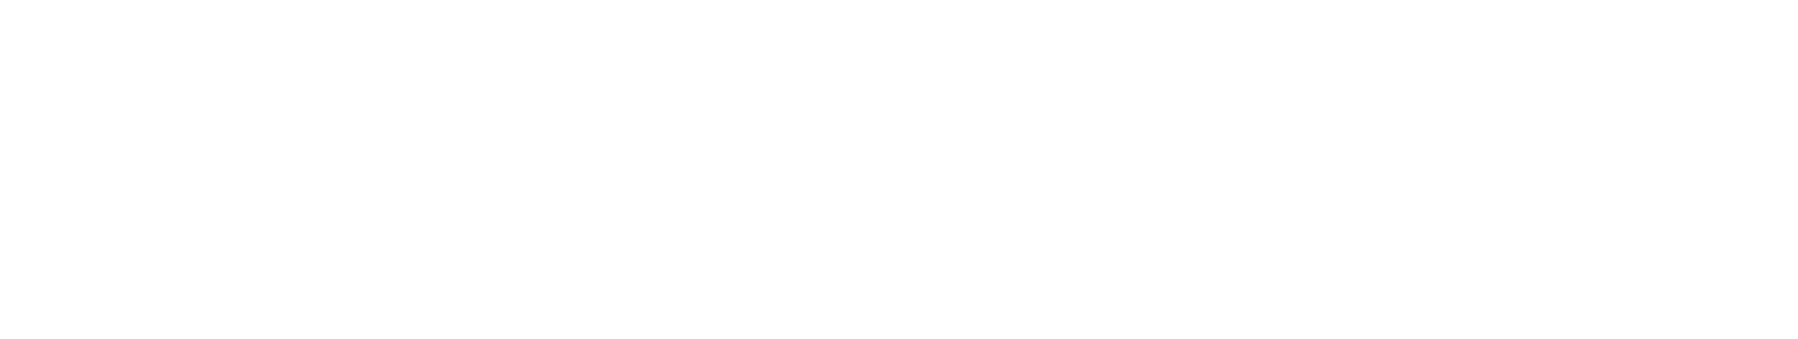 Brugfuif logo